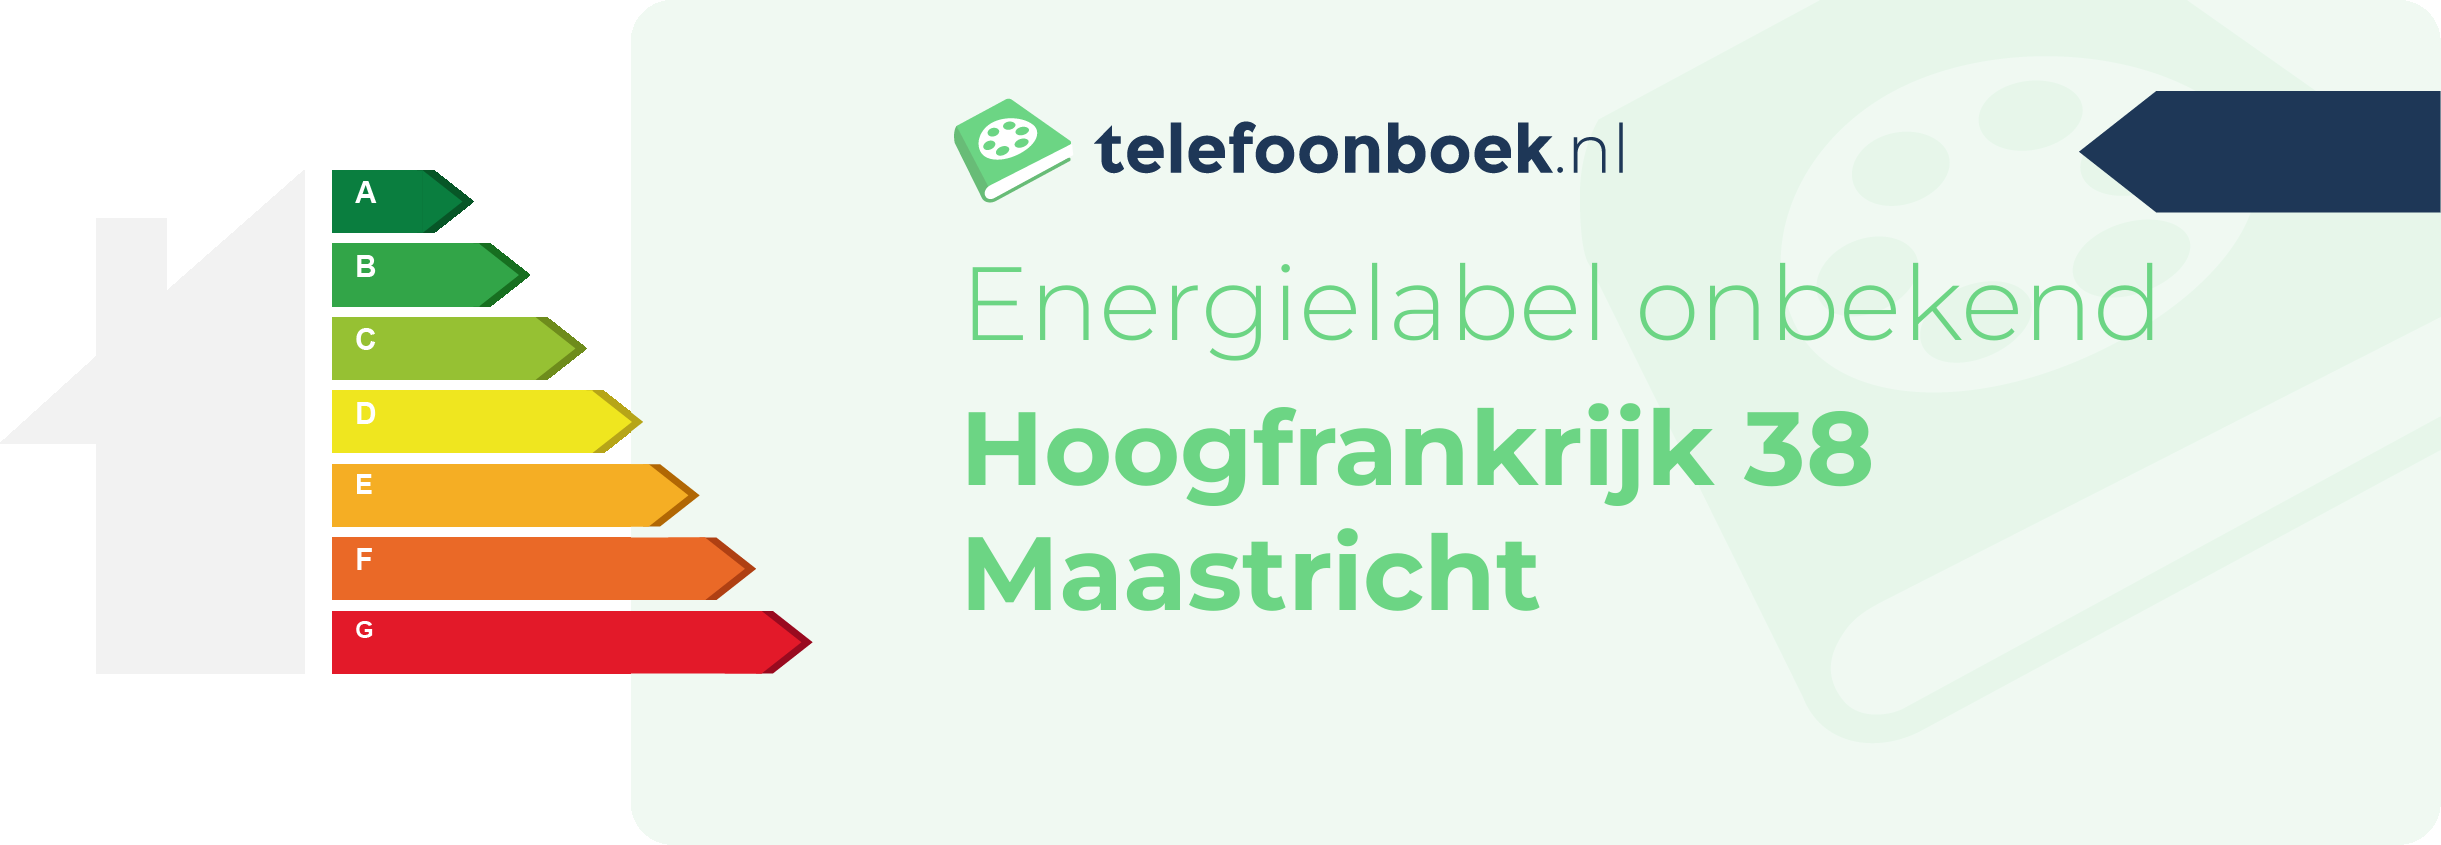 Energielabel Hoogfrankrijk 38 Maastricht